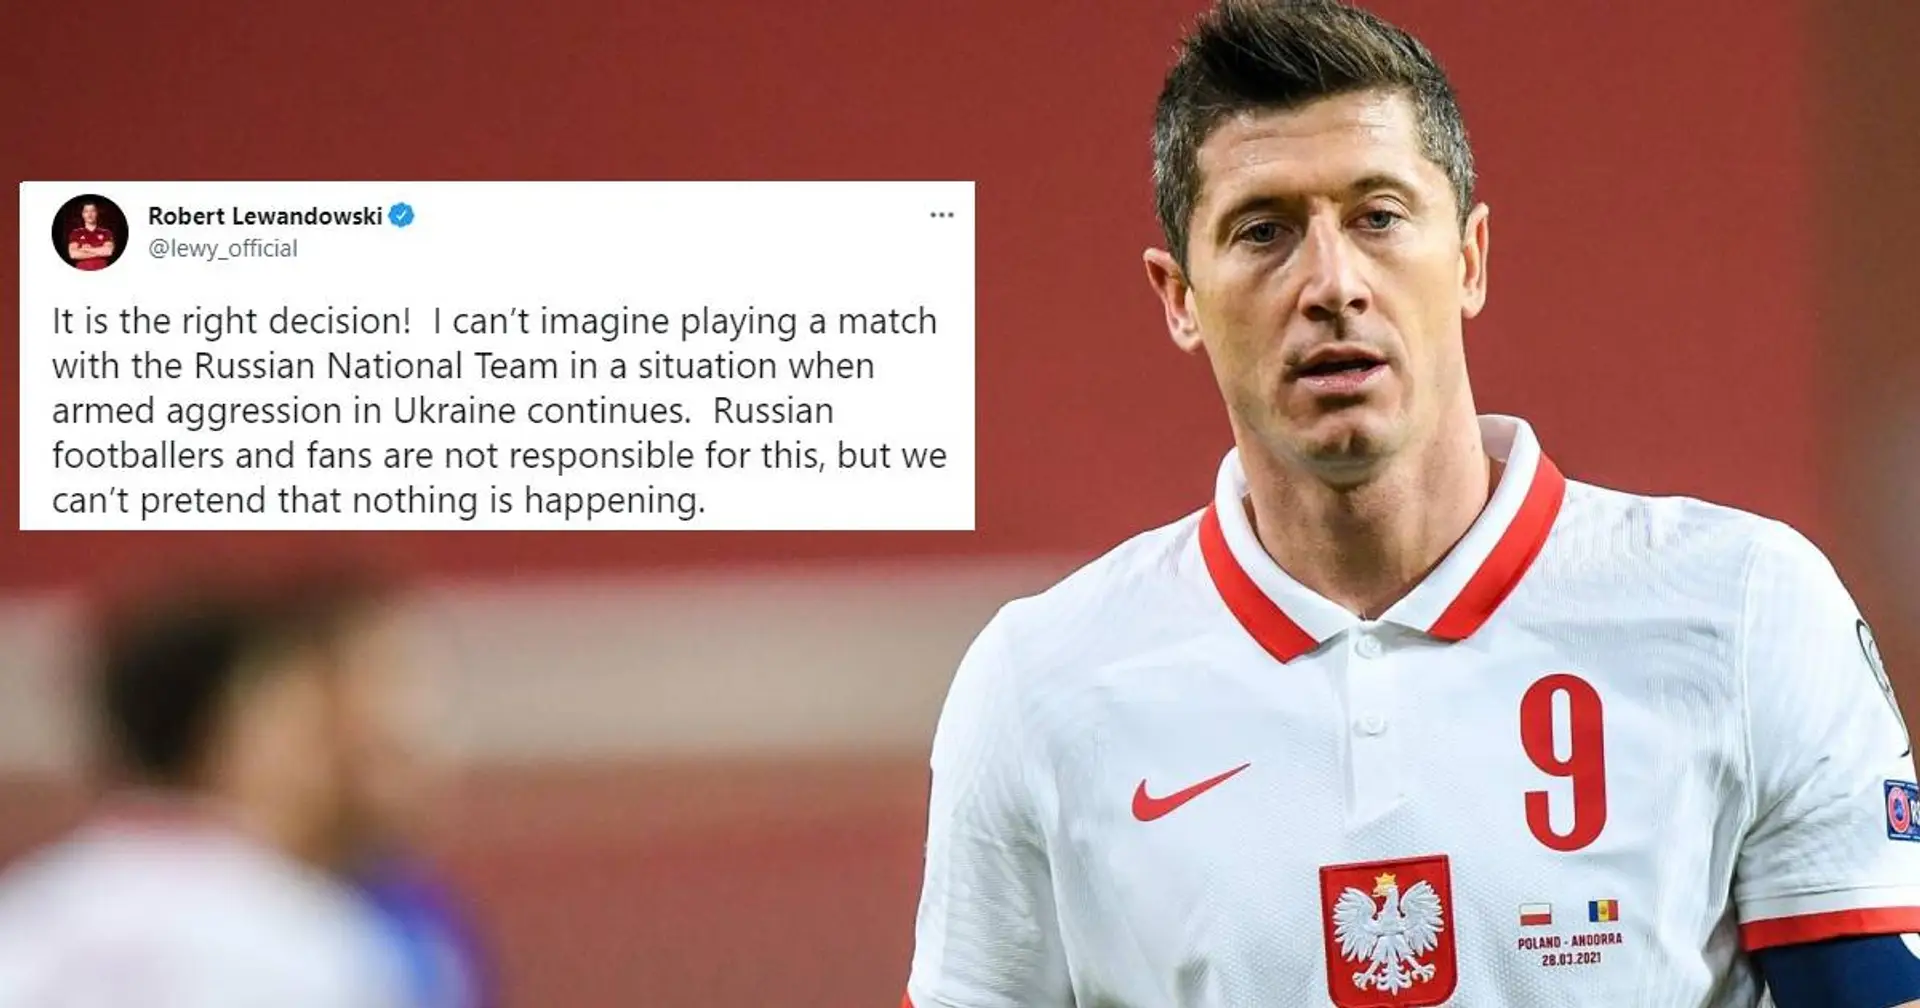 Polen weigert sich, gegen Russland in WM-Playoffs zu spielen, Lewandowski begrüßt das: "Richtige Entscheidung!"